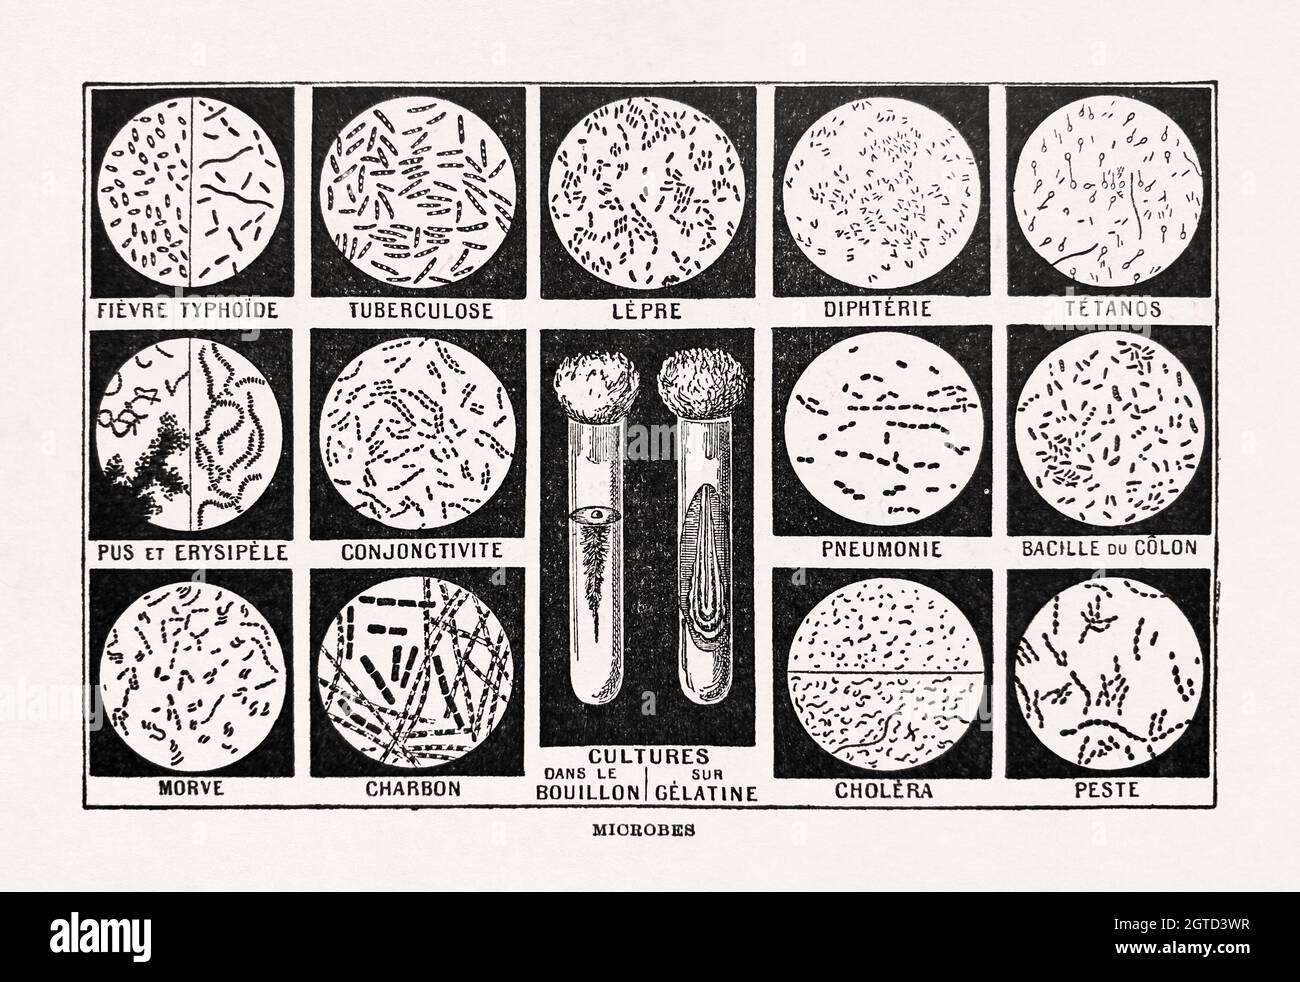 Ancienne illustration des microbes imprimée dans le dictionnaire français 'Dictionnaire complet illustraet' par l'éditeur Larousse en 1899. Banque D'Images